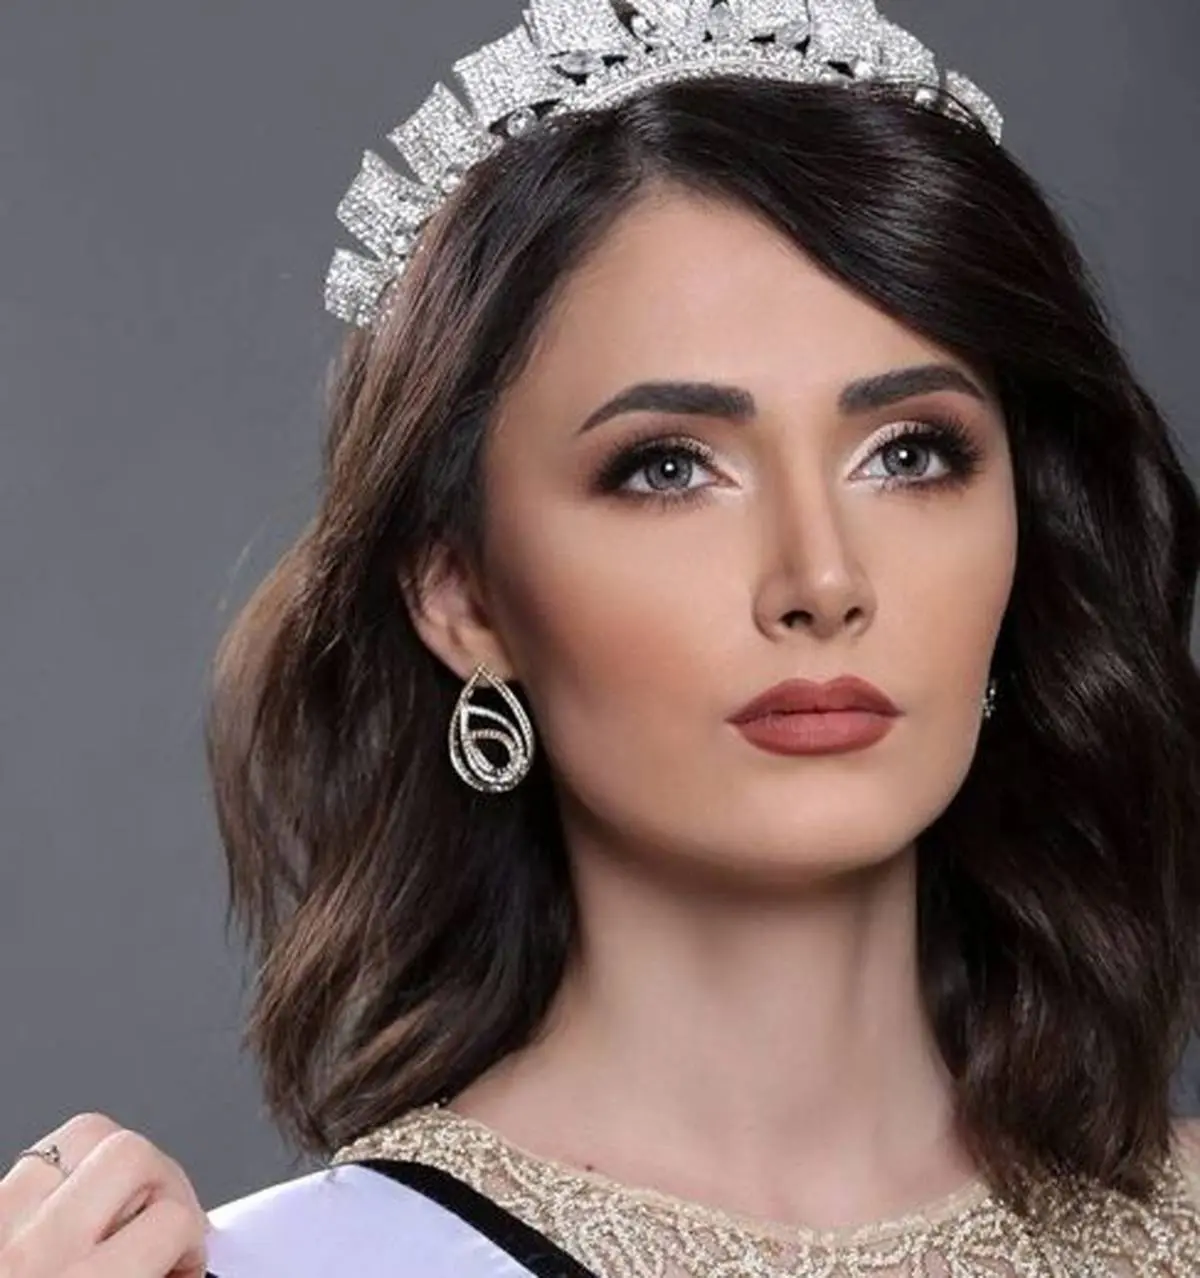 دختر ایرانی حاضر در مسابقات ملکه زیبایی 2017 + عکس